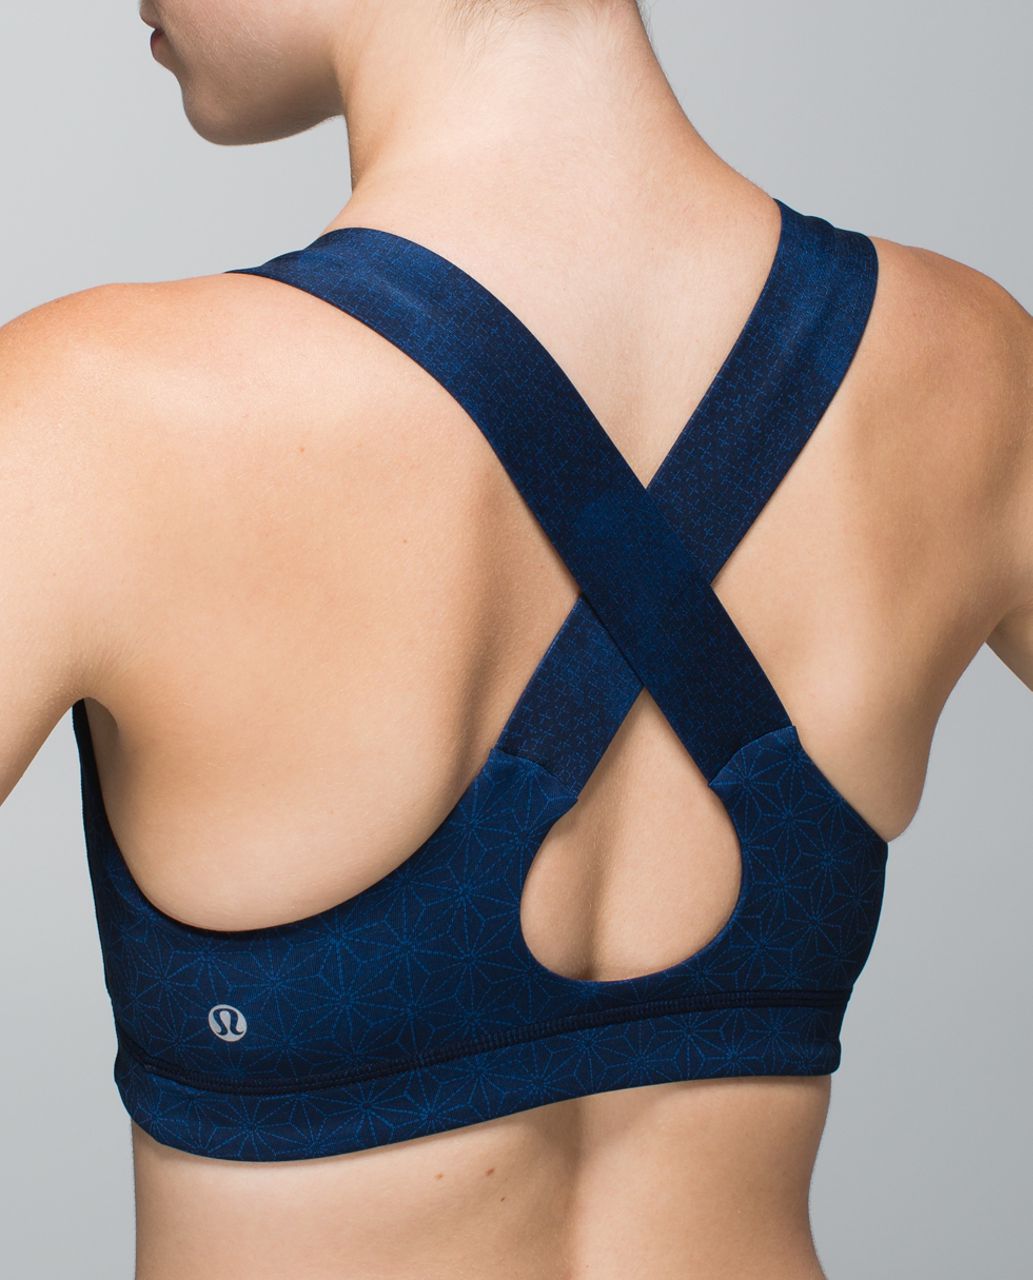 Lululemon padded sports bra Cross back straps 4 Blue and black Women's